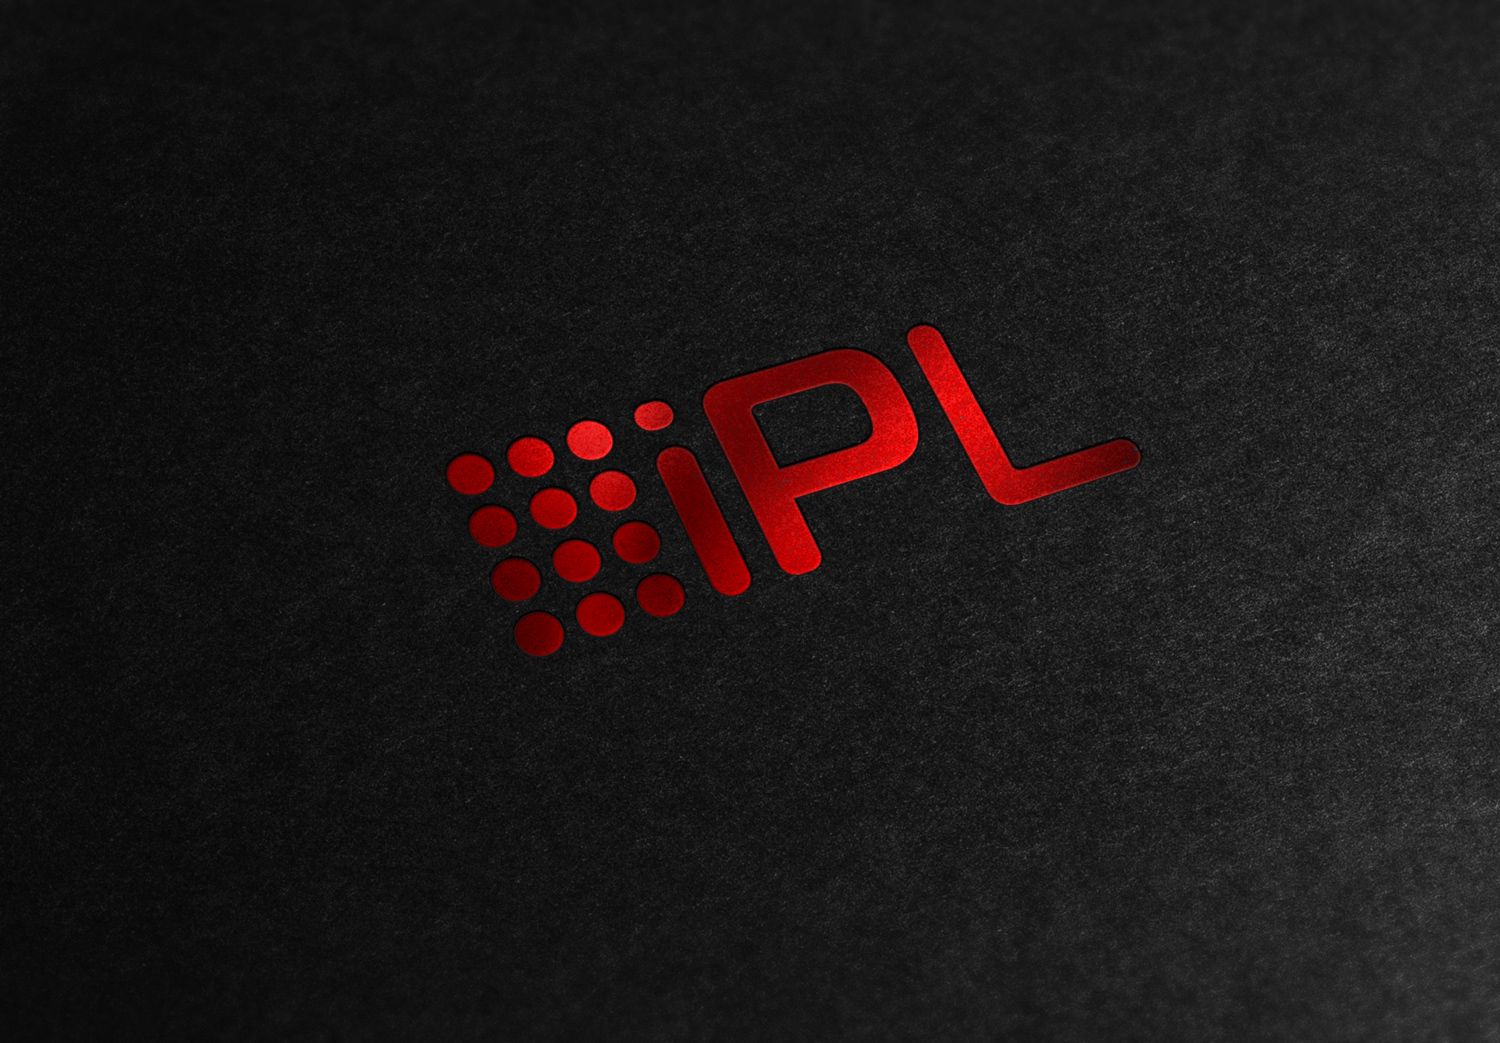 Логотип новой компаний IPL ELECTRIC  - дизайнер alexchexes